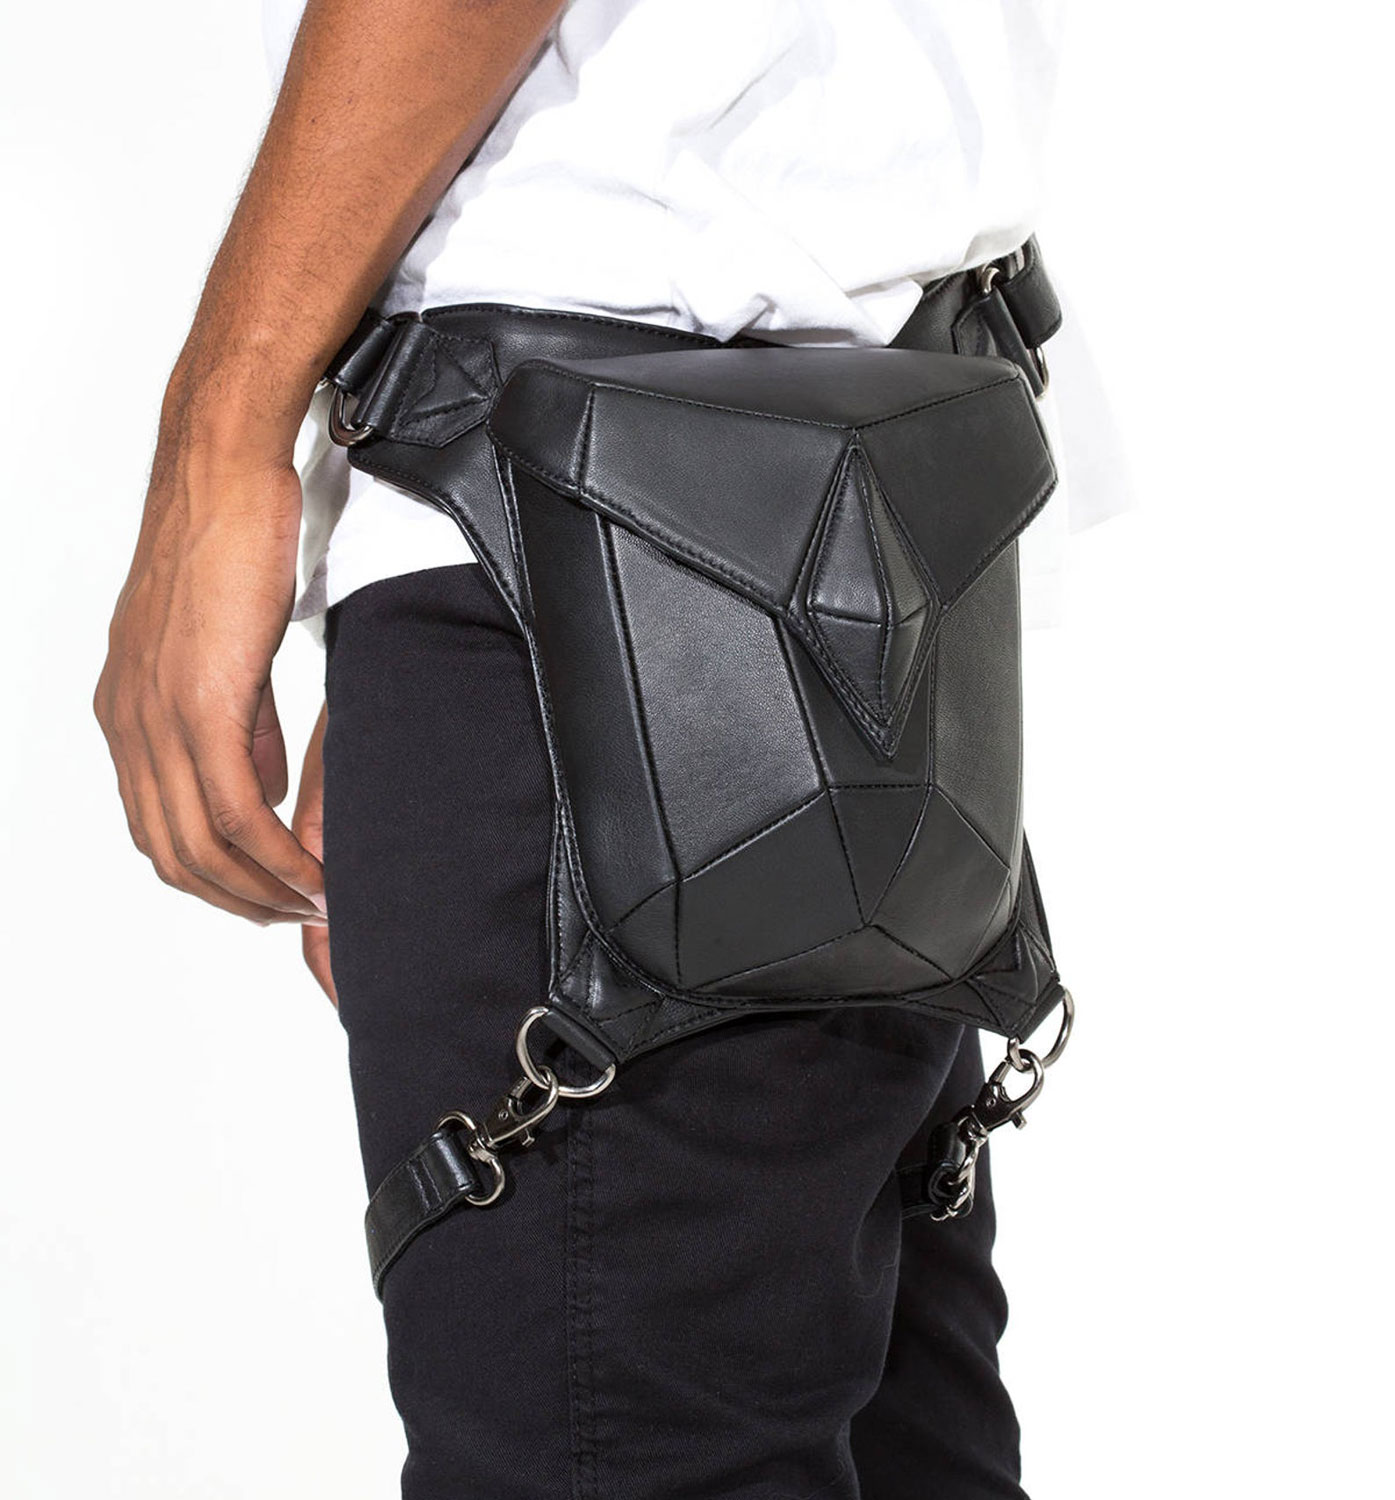 BLASTER 4.0 Black Leather Shoulder Holster and Hip Bag